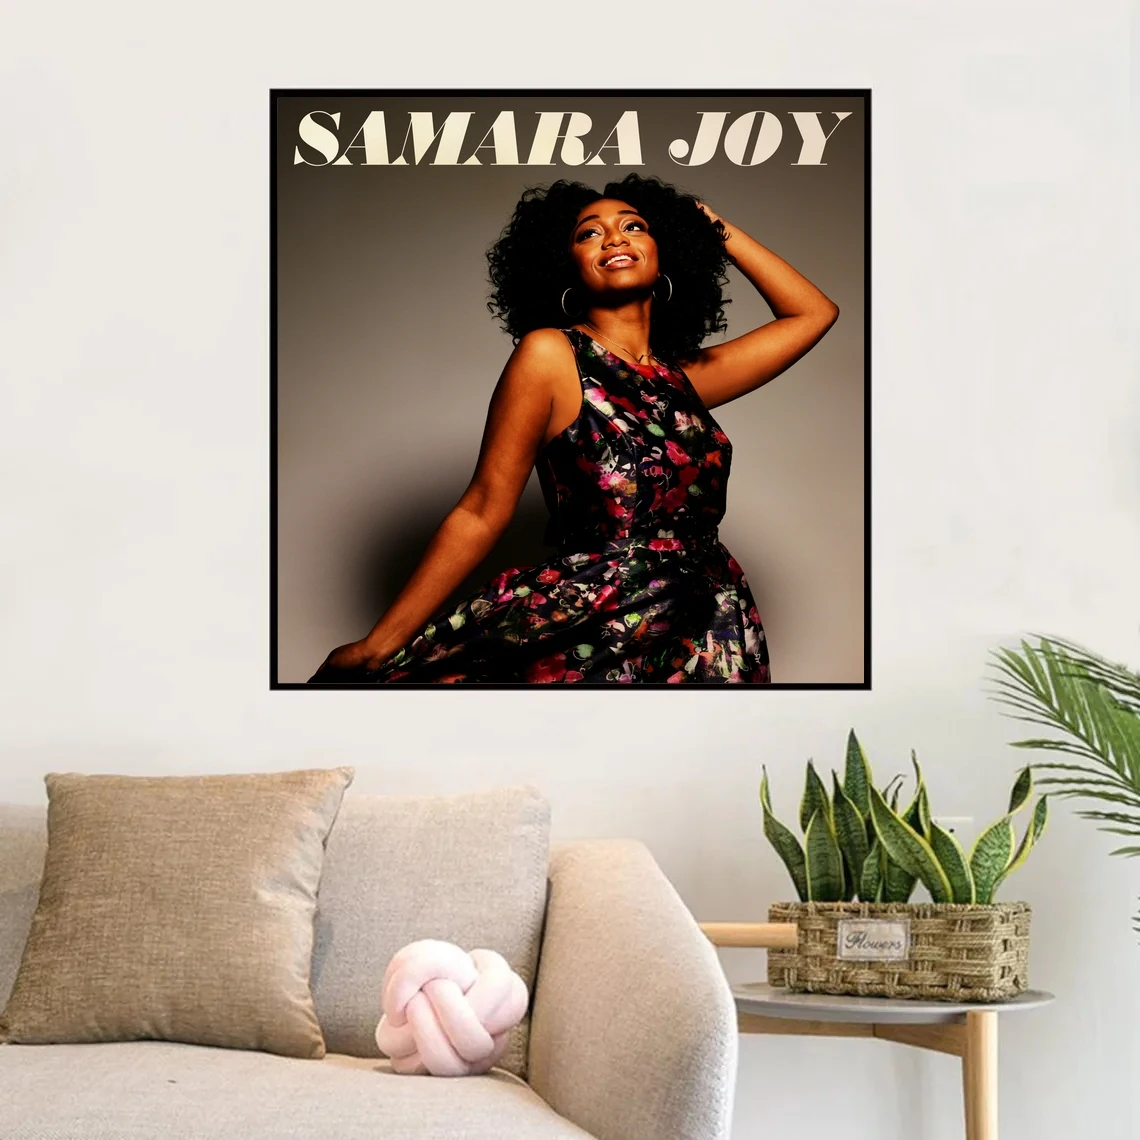 

Плакат «Музыкальный альбом» Samara Joy 2021 рэп, Художественная Картина на холсте, настенное украшение для гостиной, домашний декор (без рамки)